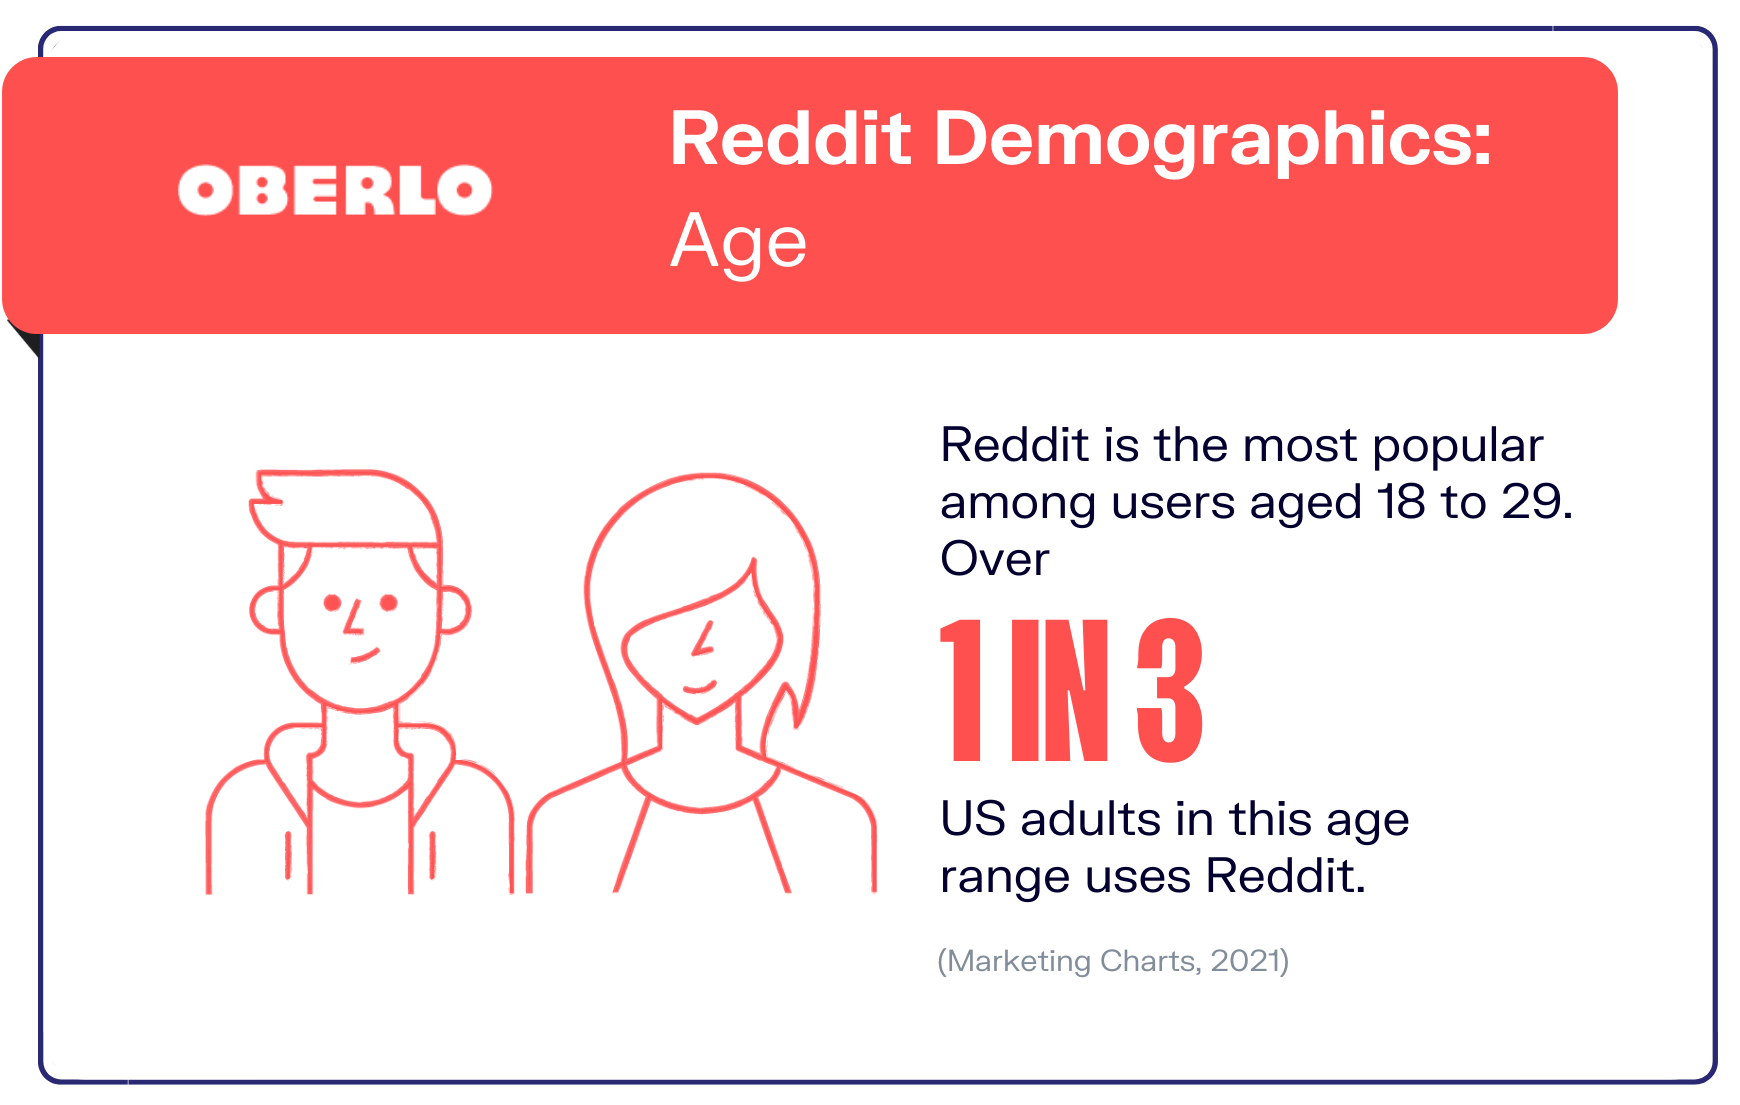 reddit statistics graphic5